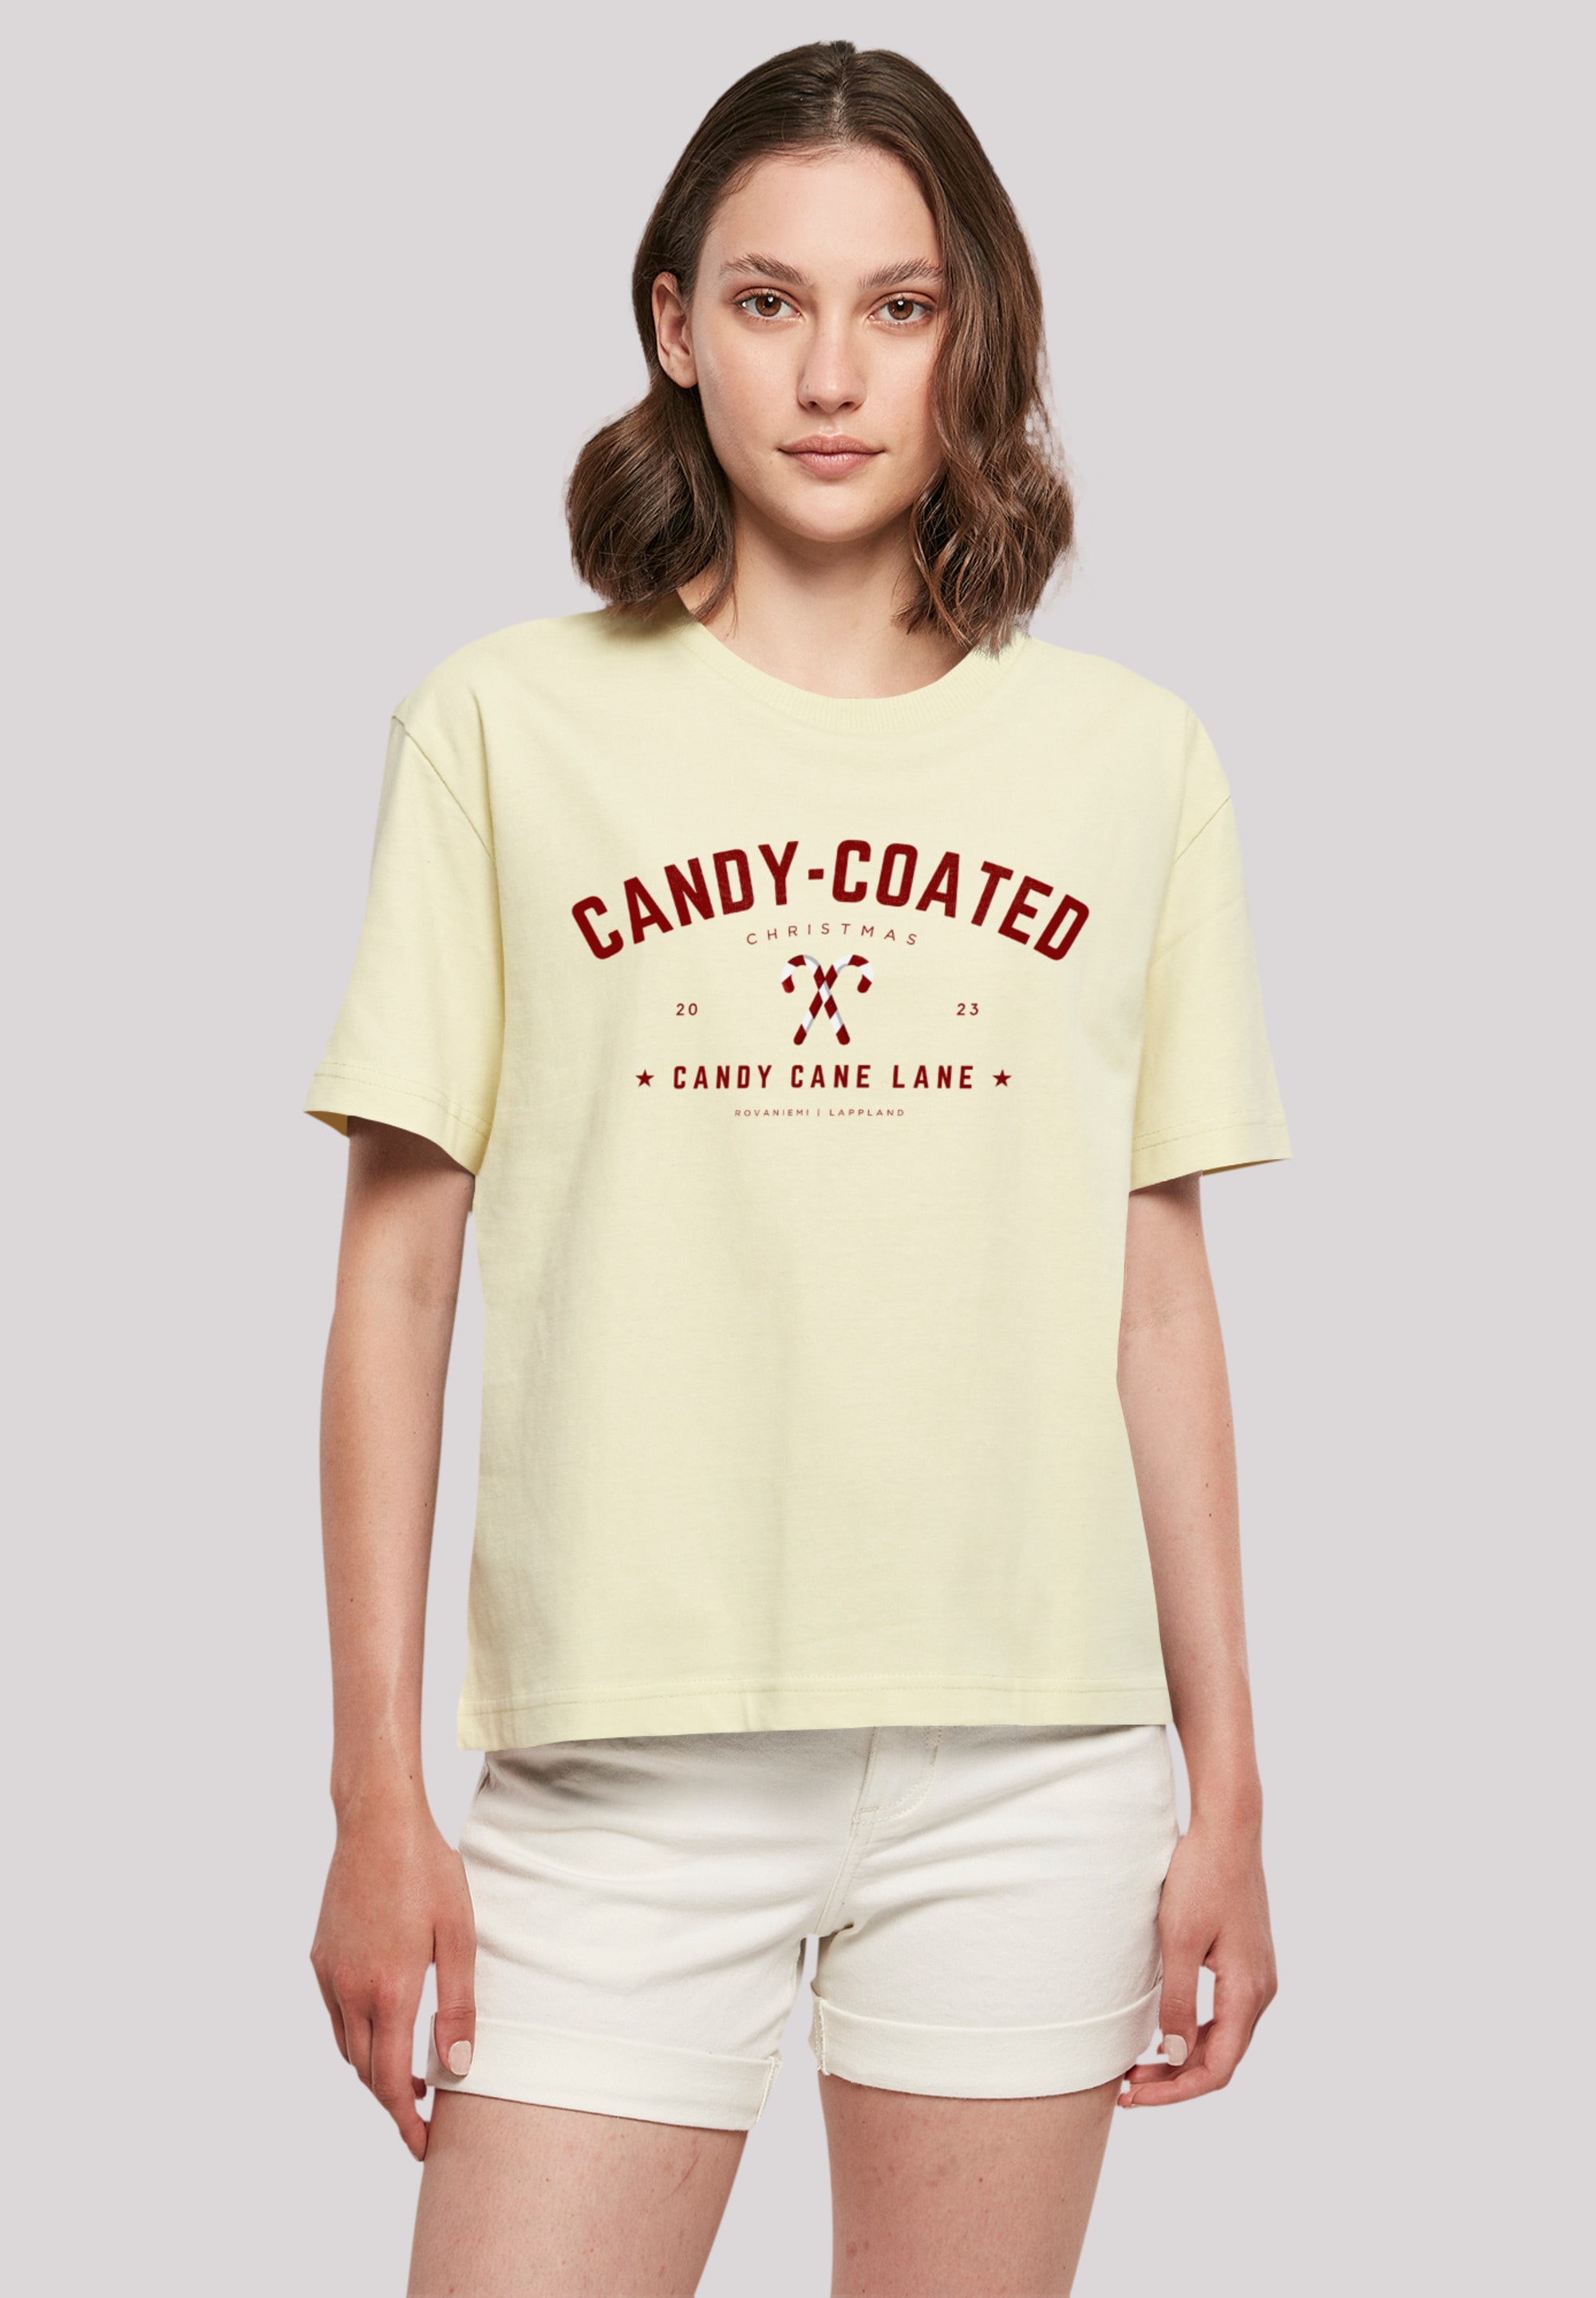 T-Shirt Geschenk, Weihnachten, »Weihnachten Logo I\'m online Christmas«, | Coated F4NT4STIC Candy kaufen walking